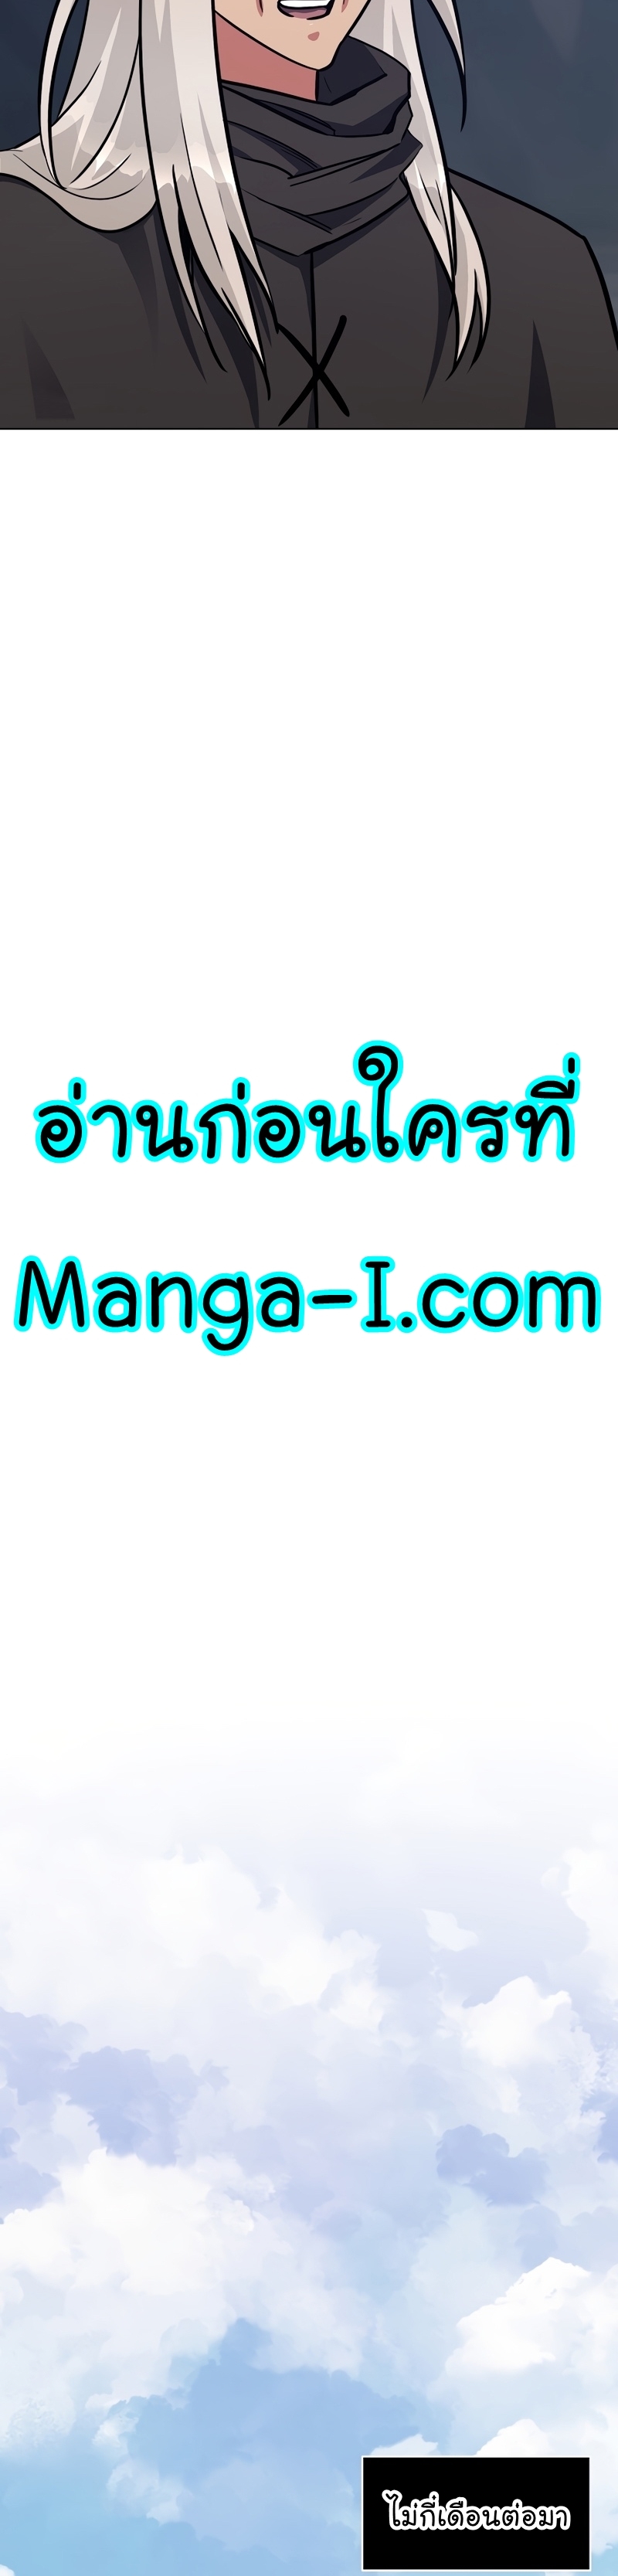 Manga Manhwa Level 1 Player 62 (33)